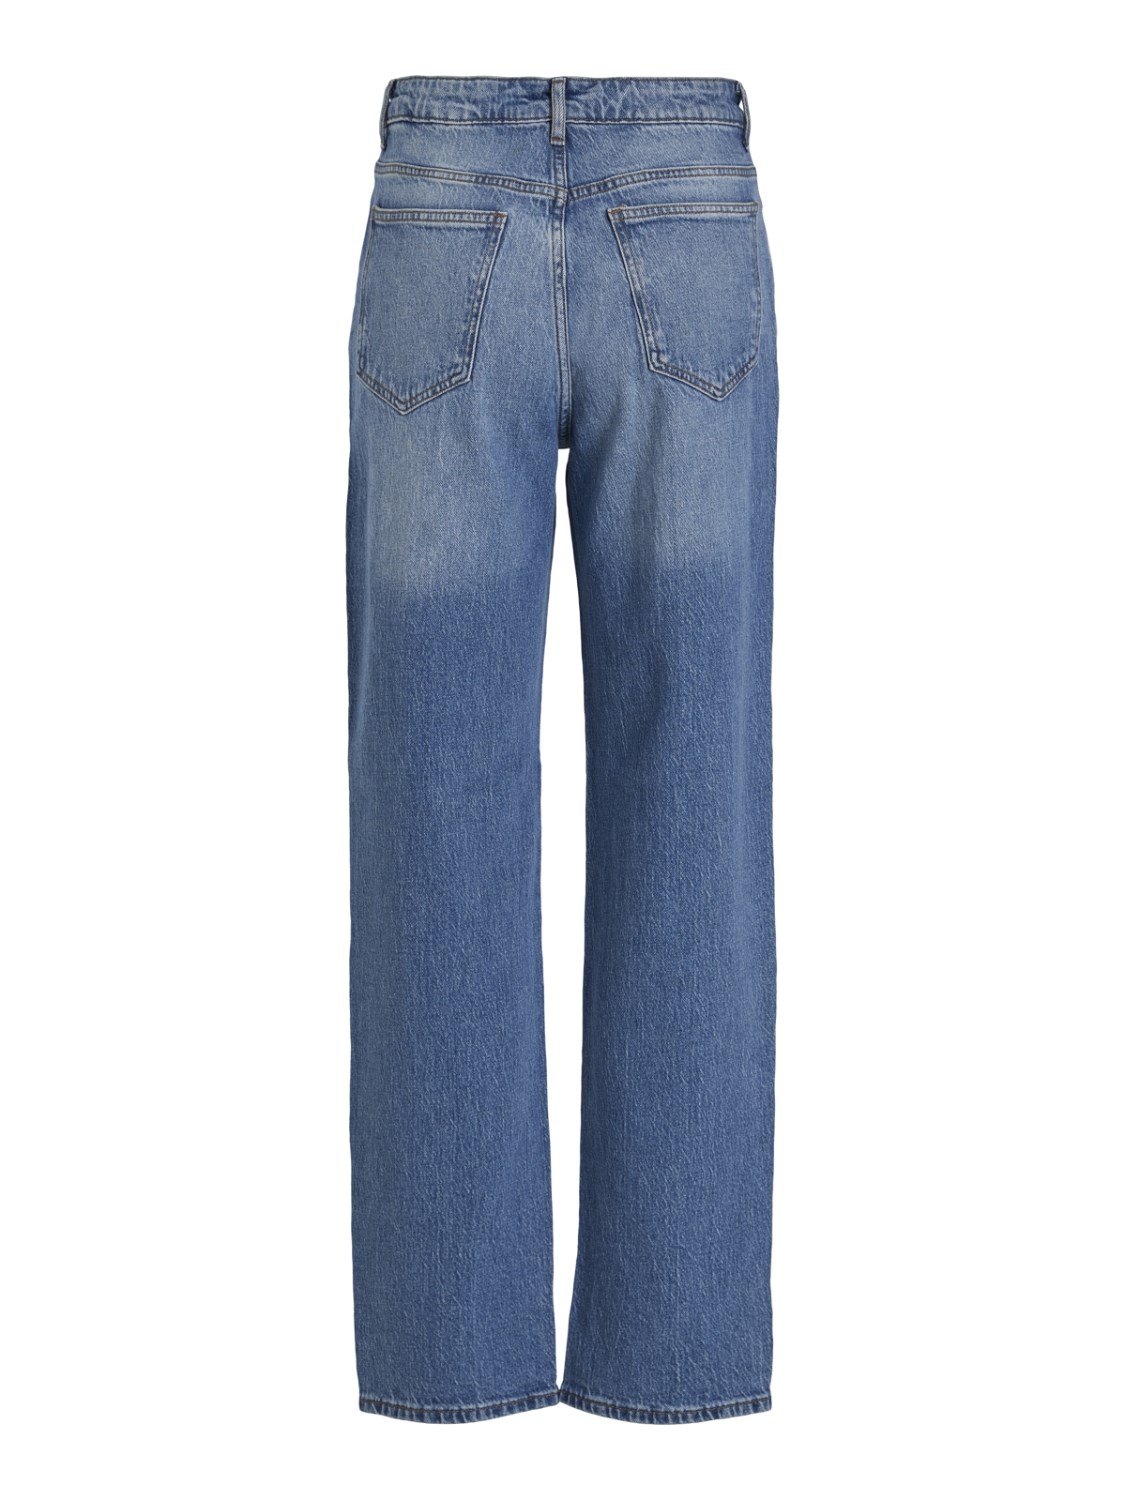 Jeans modelo Kelly con lavado azul medio. Marca Vila.